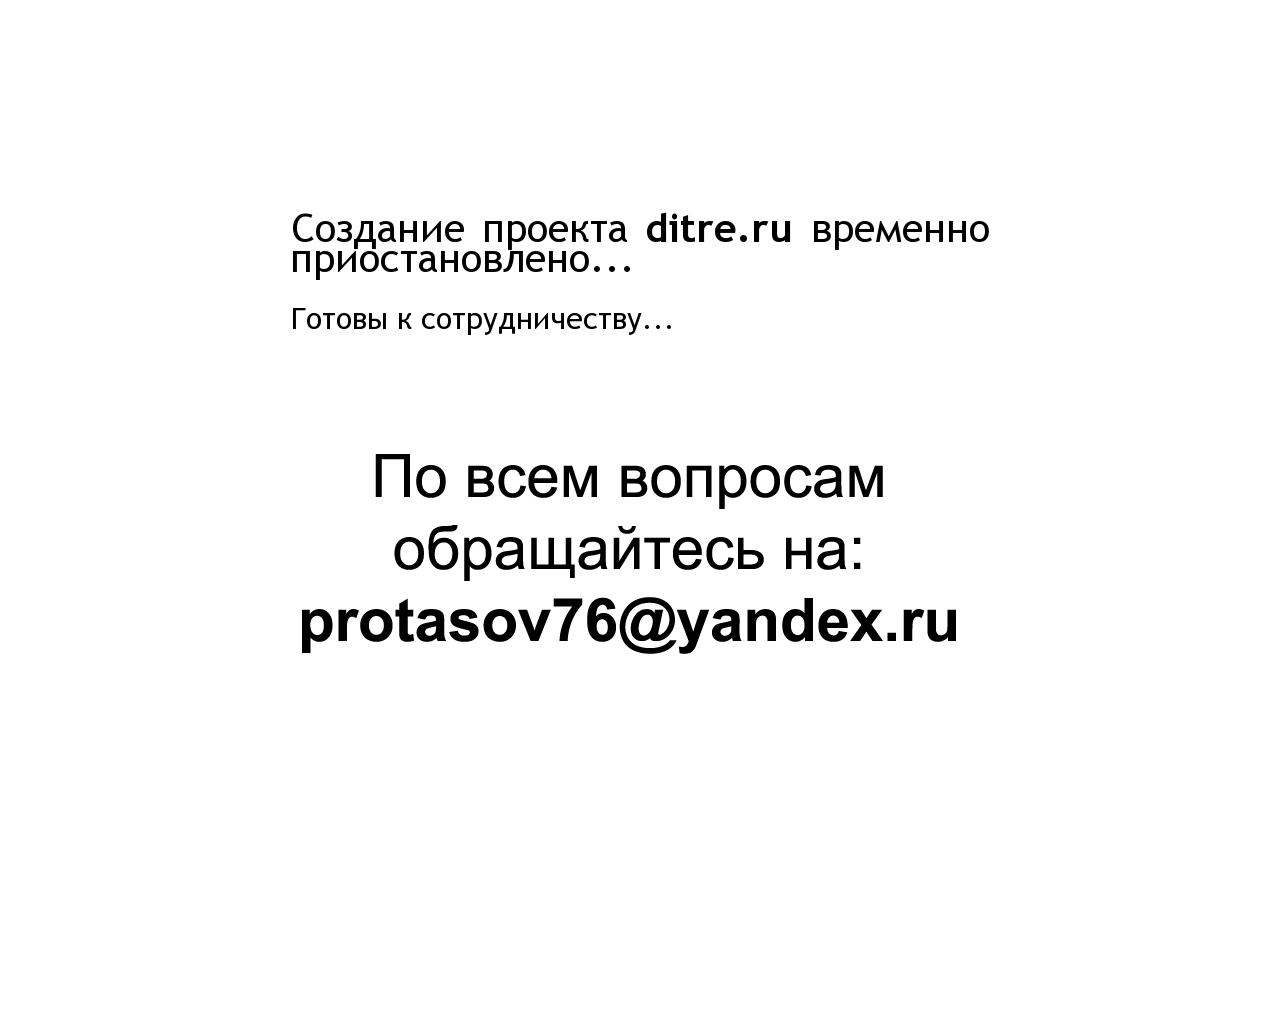 Изображение сайта ditre.ru в разрешении 1280x1024